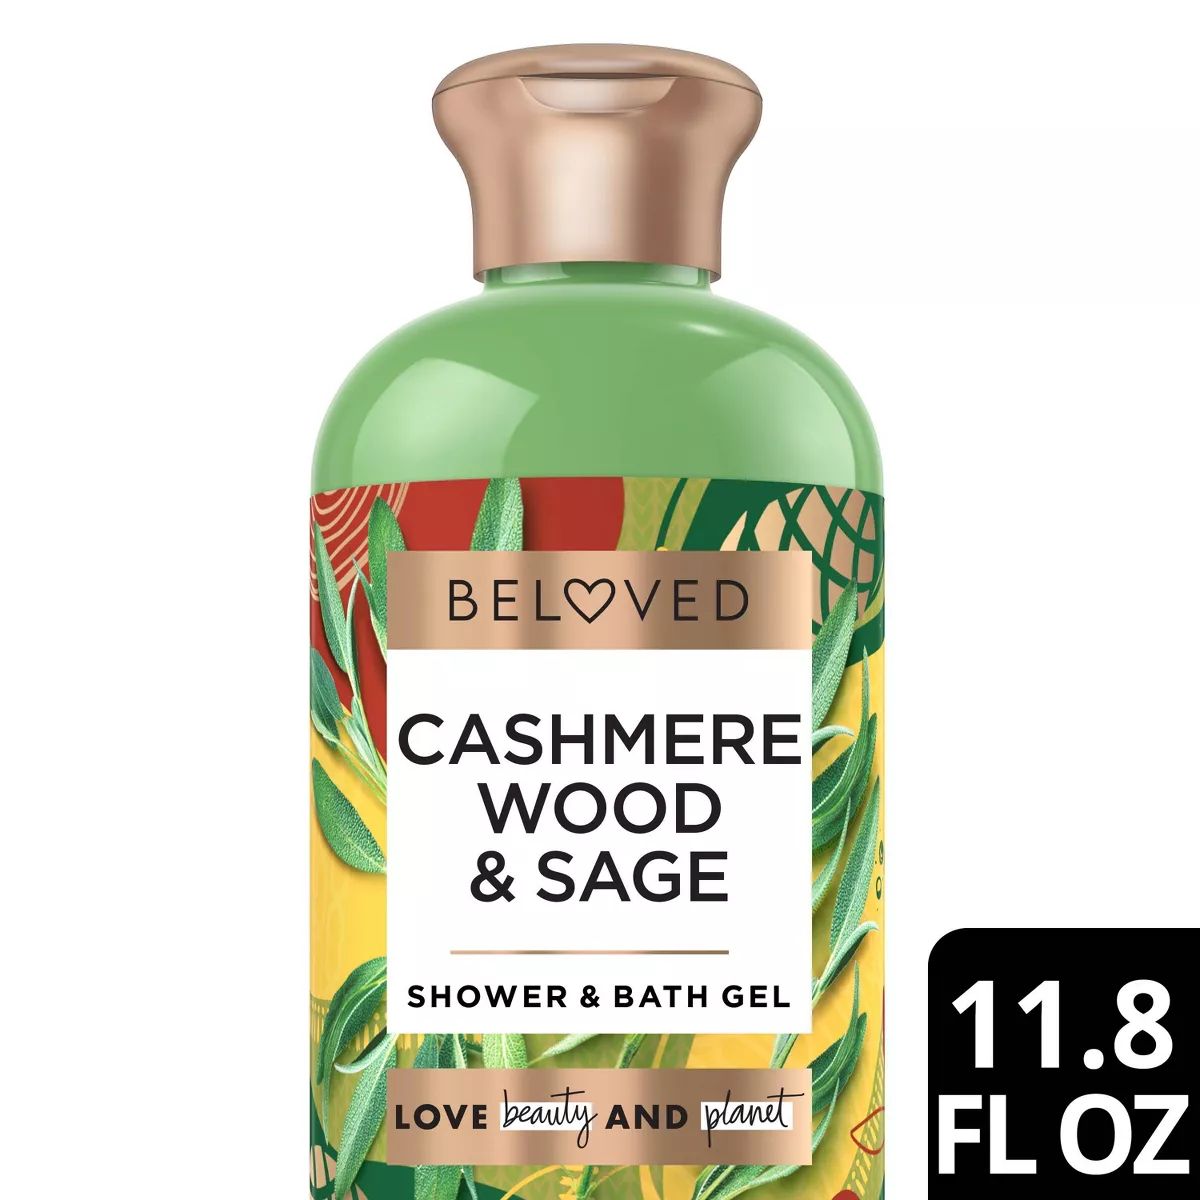 Beloved Cashmere Wood and Sage Shower and Bath Gel - 11.8 fl oz | Target